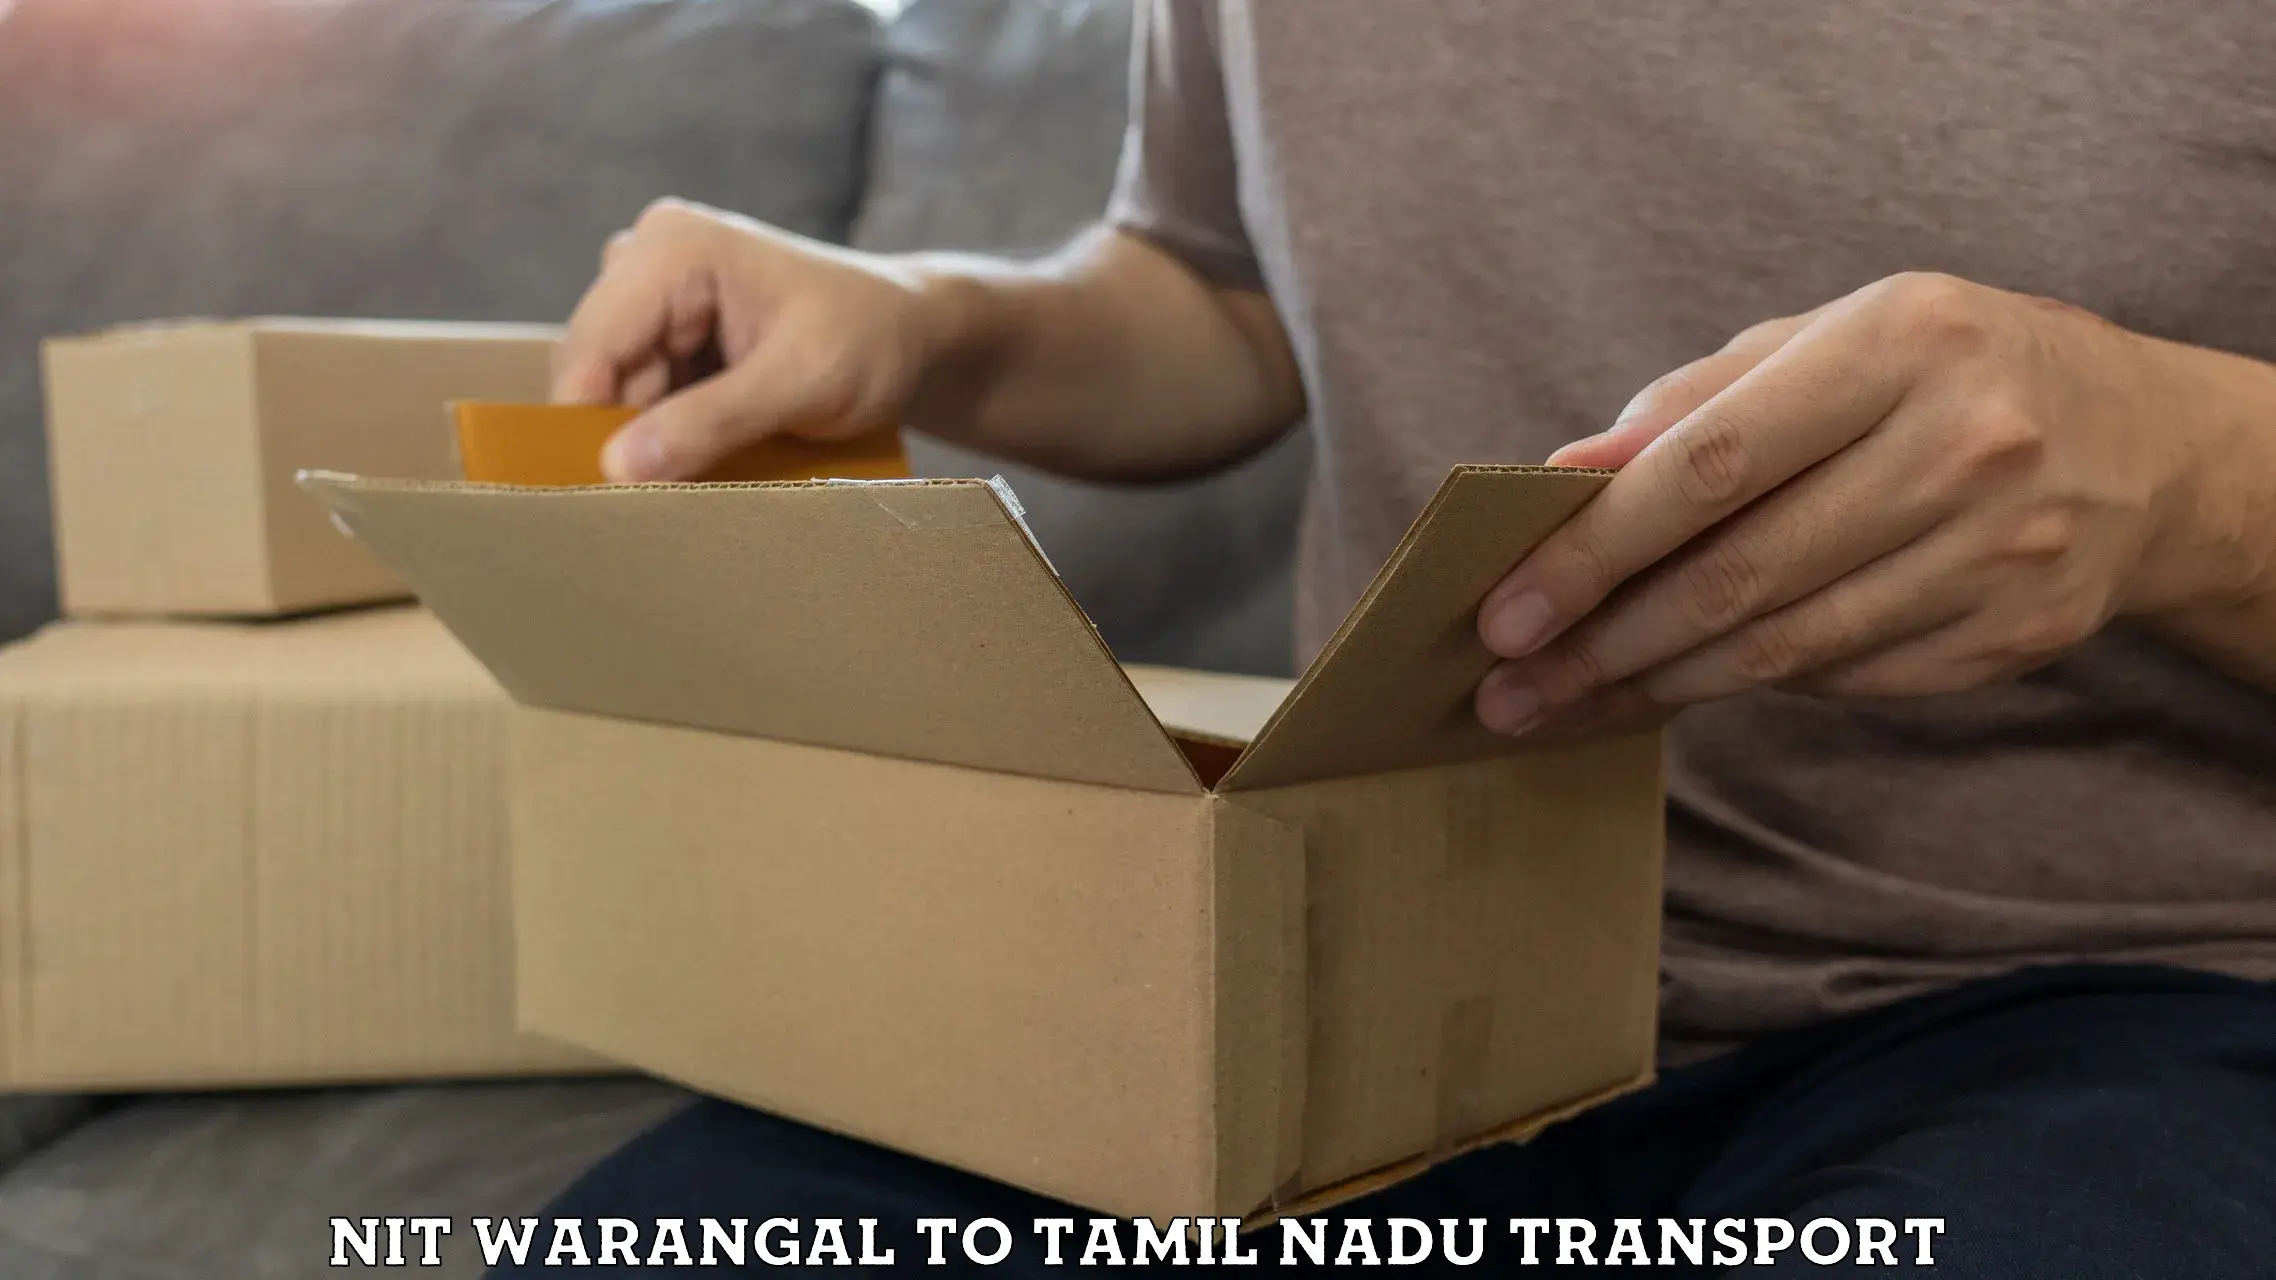 Lorry transport service NIT Warangal to Chengalpattu